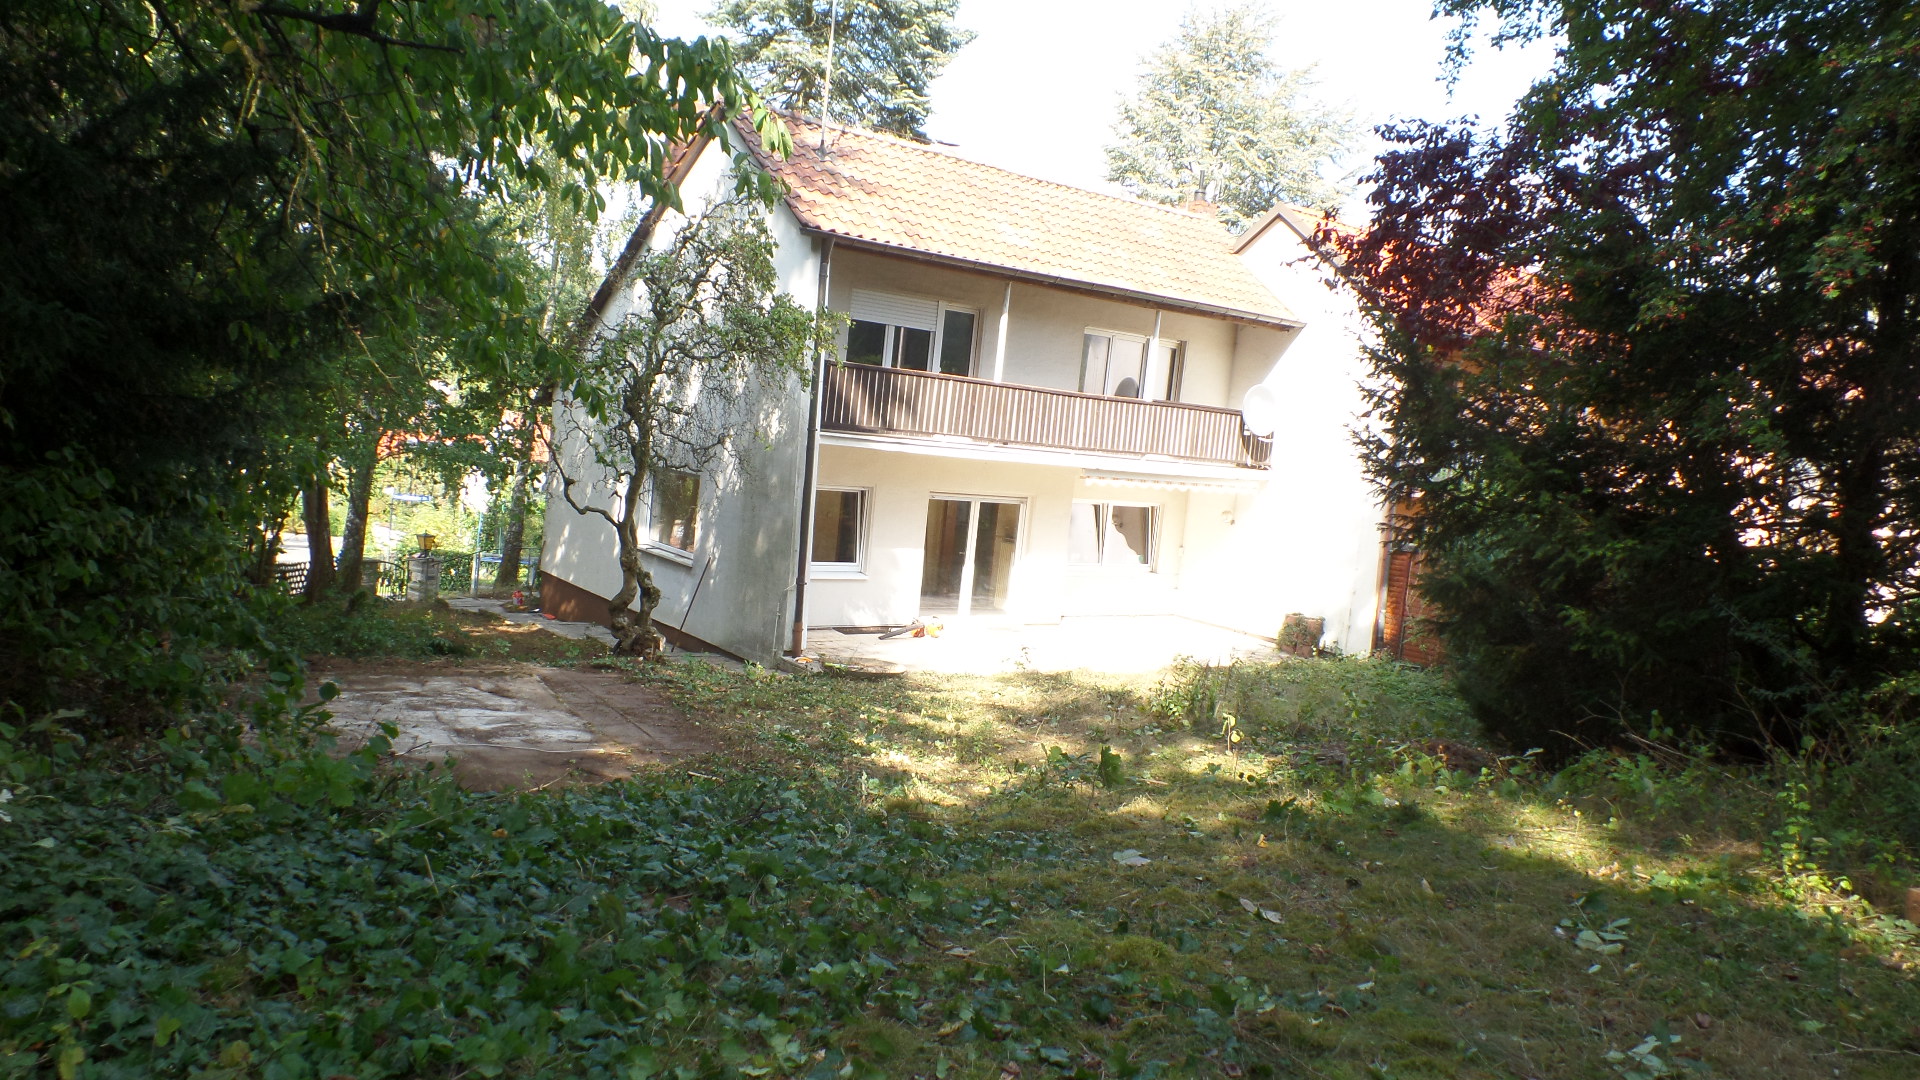 Verkauft: Einfamilienhaus in Schwabach-Wolkersdorf